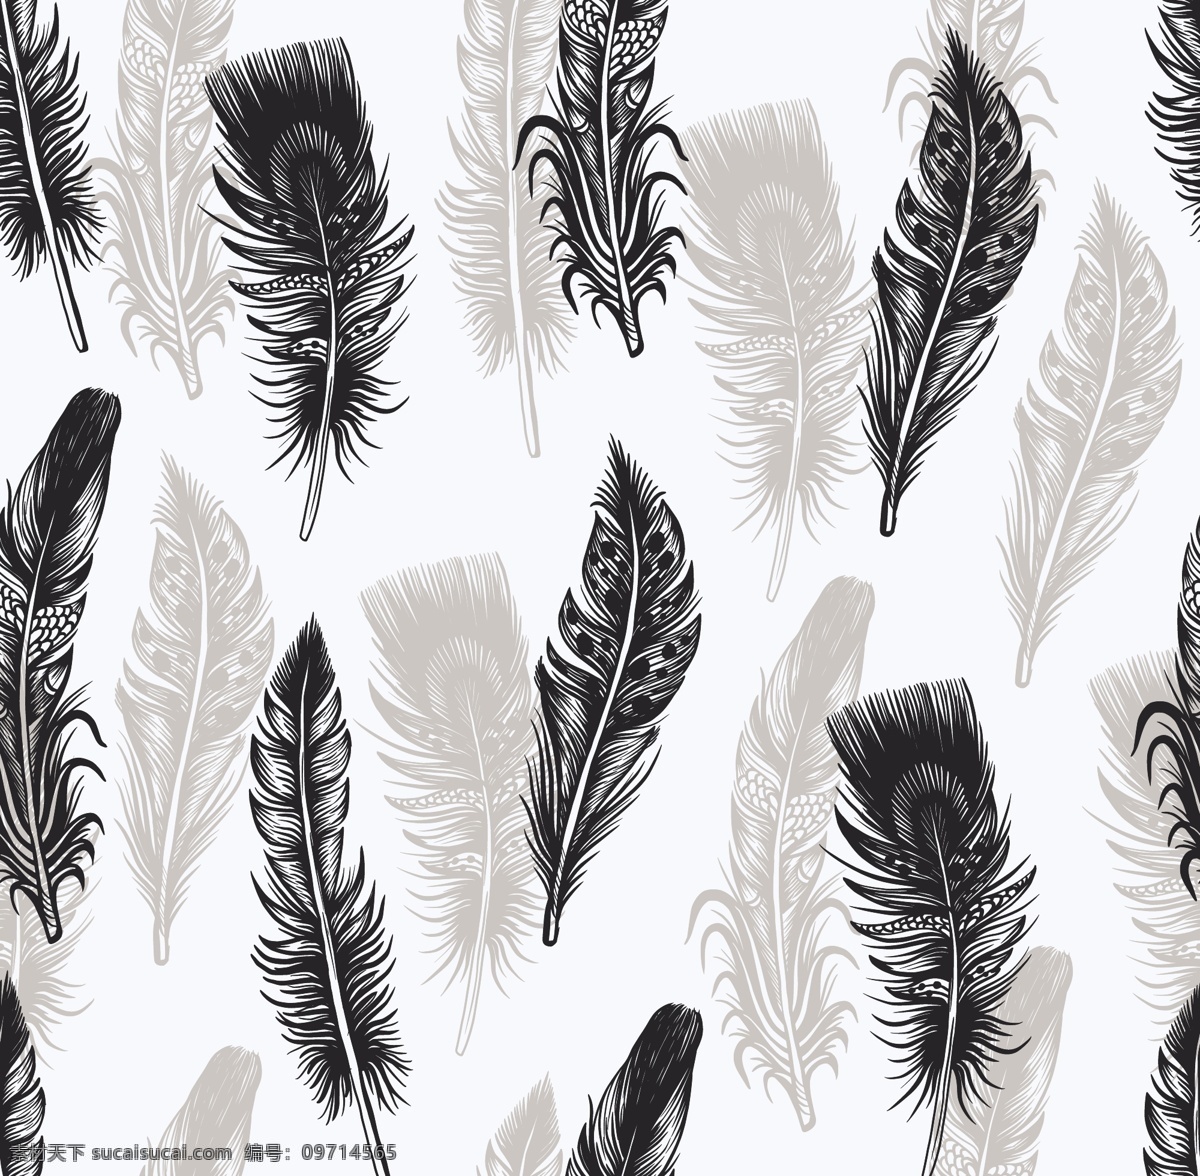 羽毛素材 羽毛矢量素材 无缝连续图 四面连续图 动物羽毛 羽毛矢量图 羽毛图案 羽毛设计图 动物矢量 生物世界